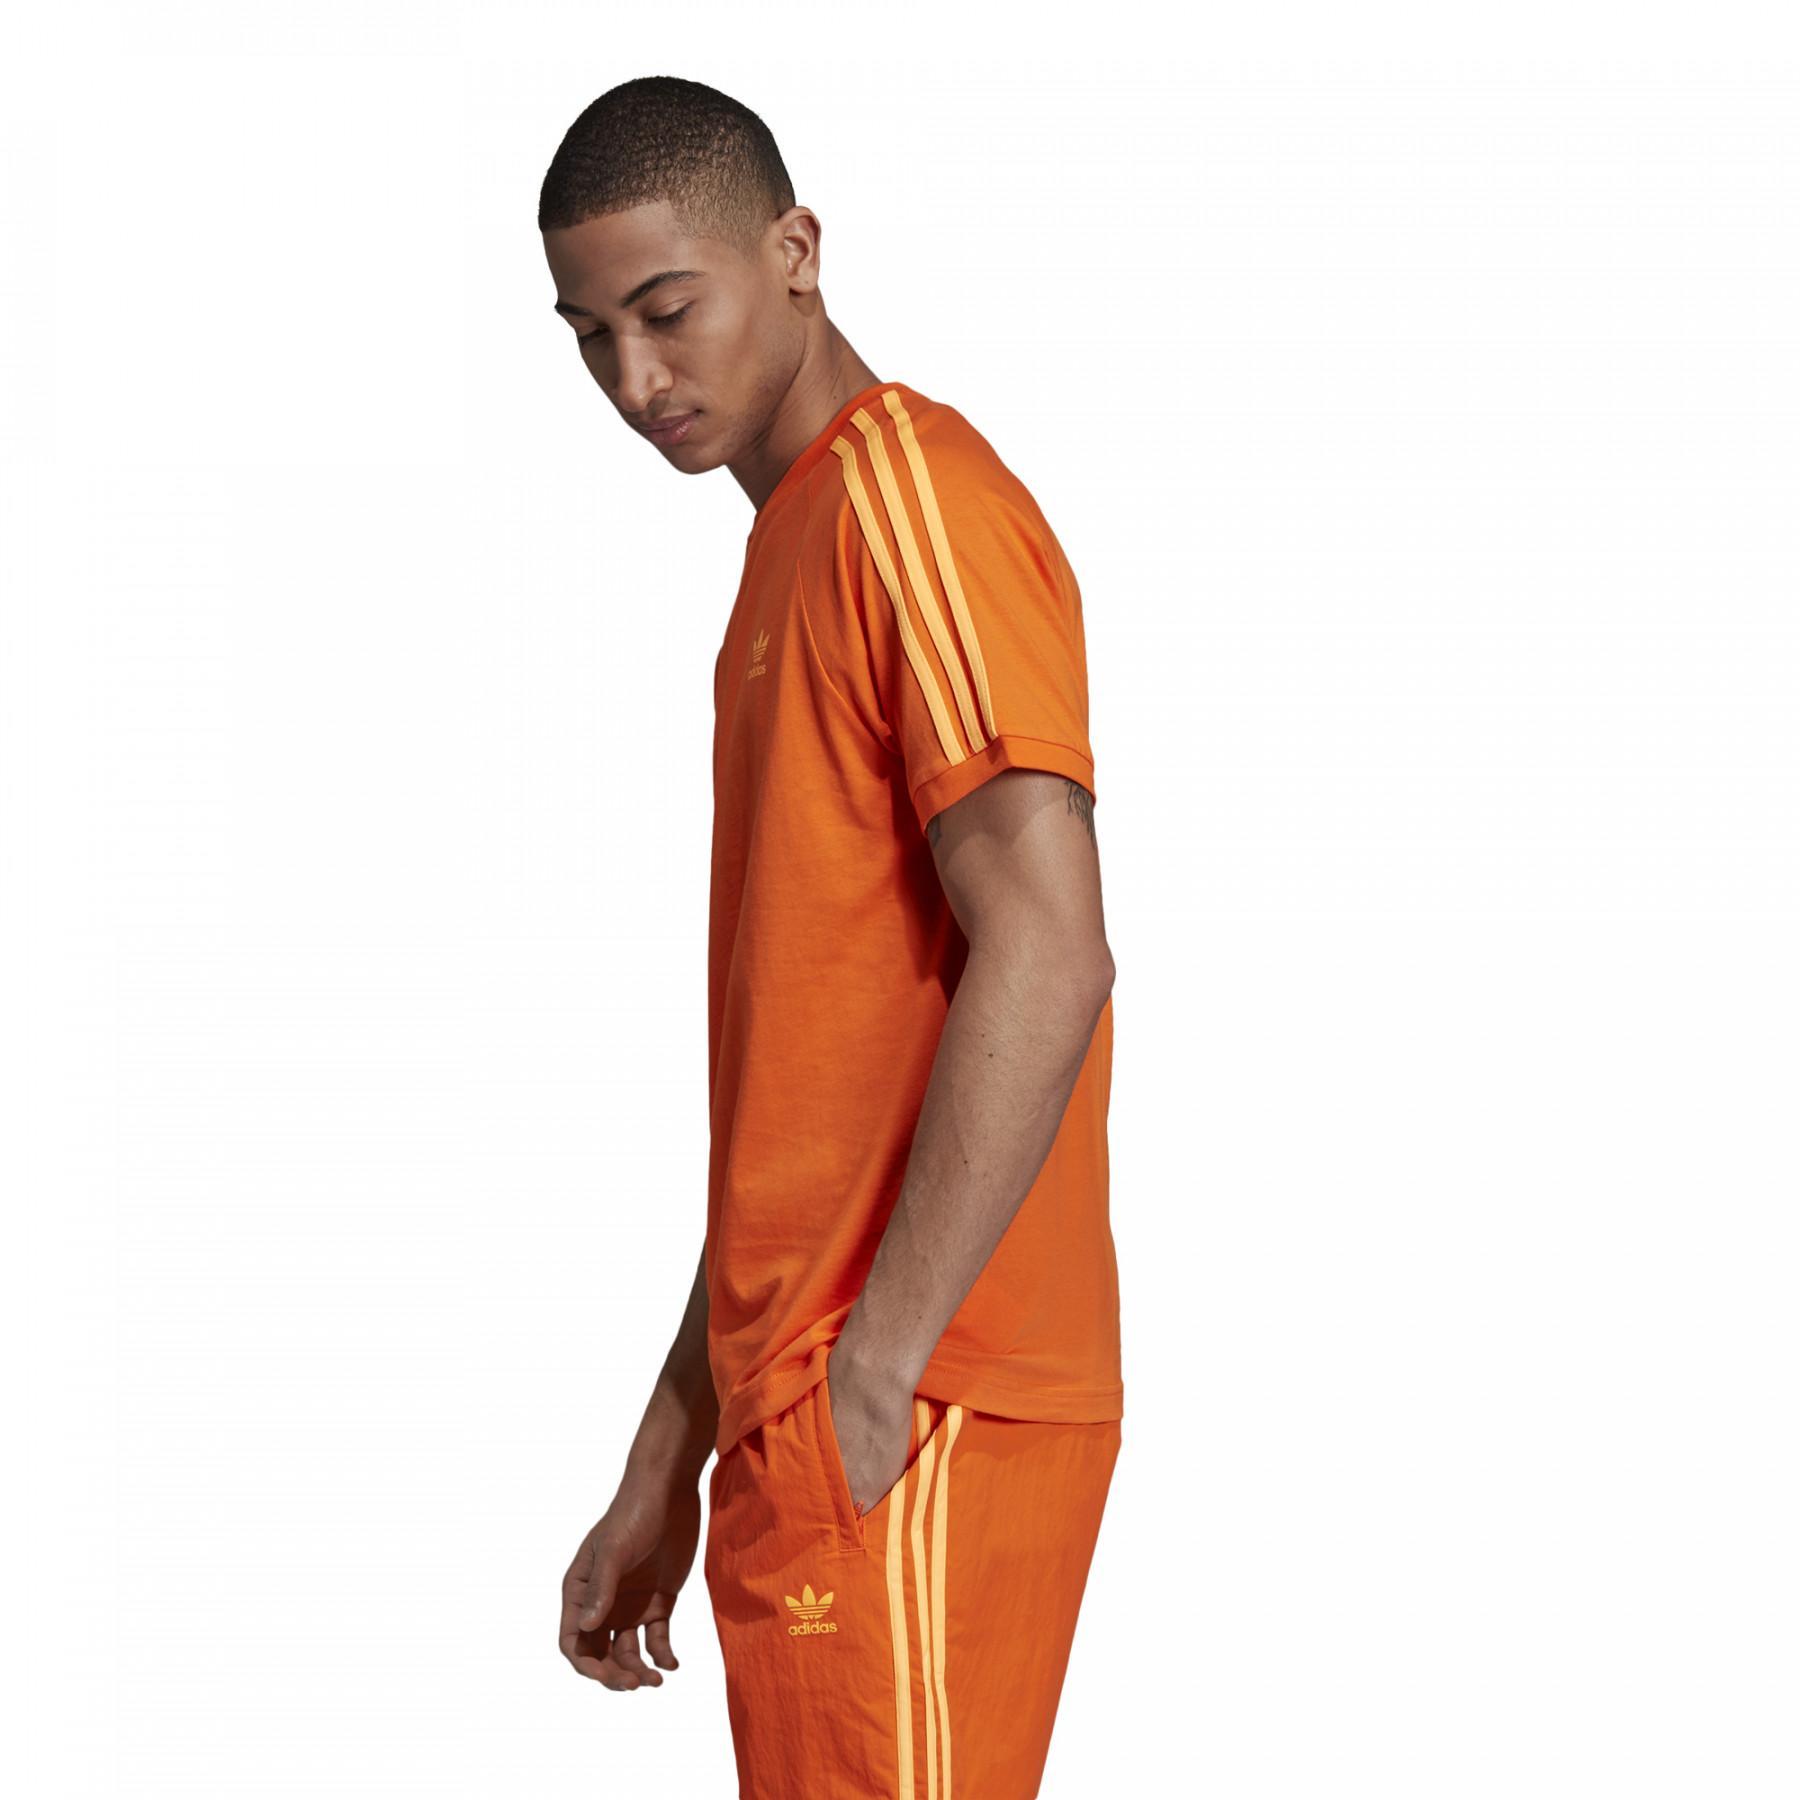 Koszulka adidas 3-Stripes